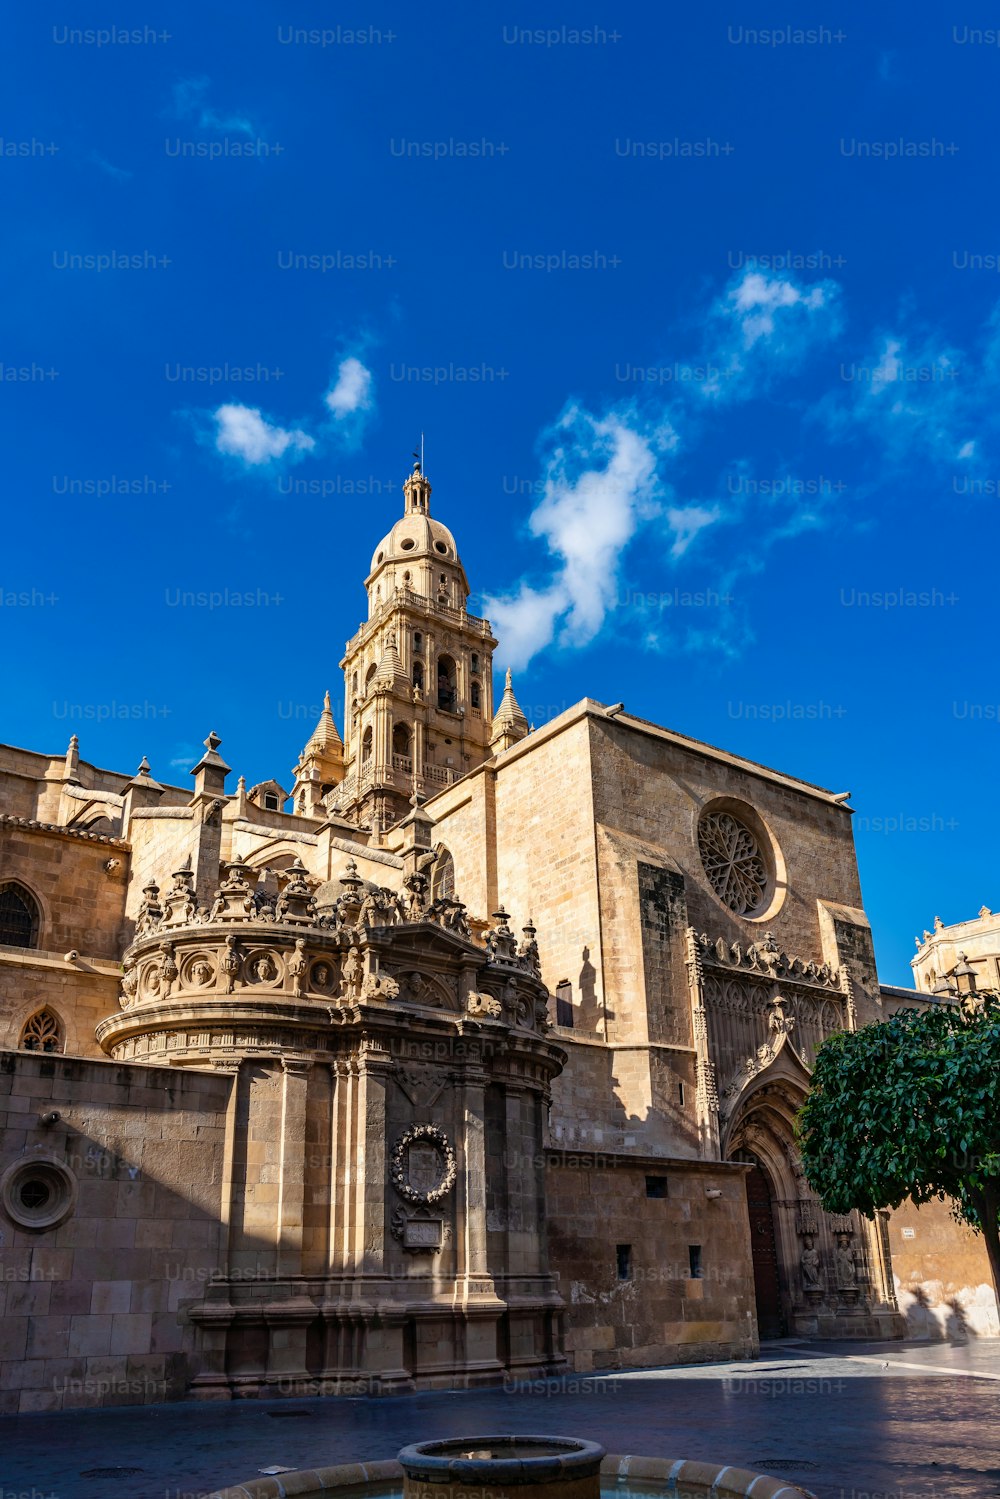 Chiesa Cattedrale di Santa Maria, La Santa Iglesia Catedral de Santa Maria a Murcia, Spagna. Un misto di stile gotico e barocco.